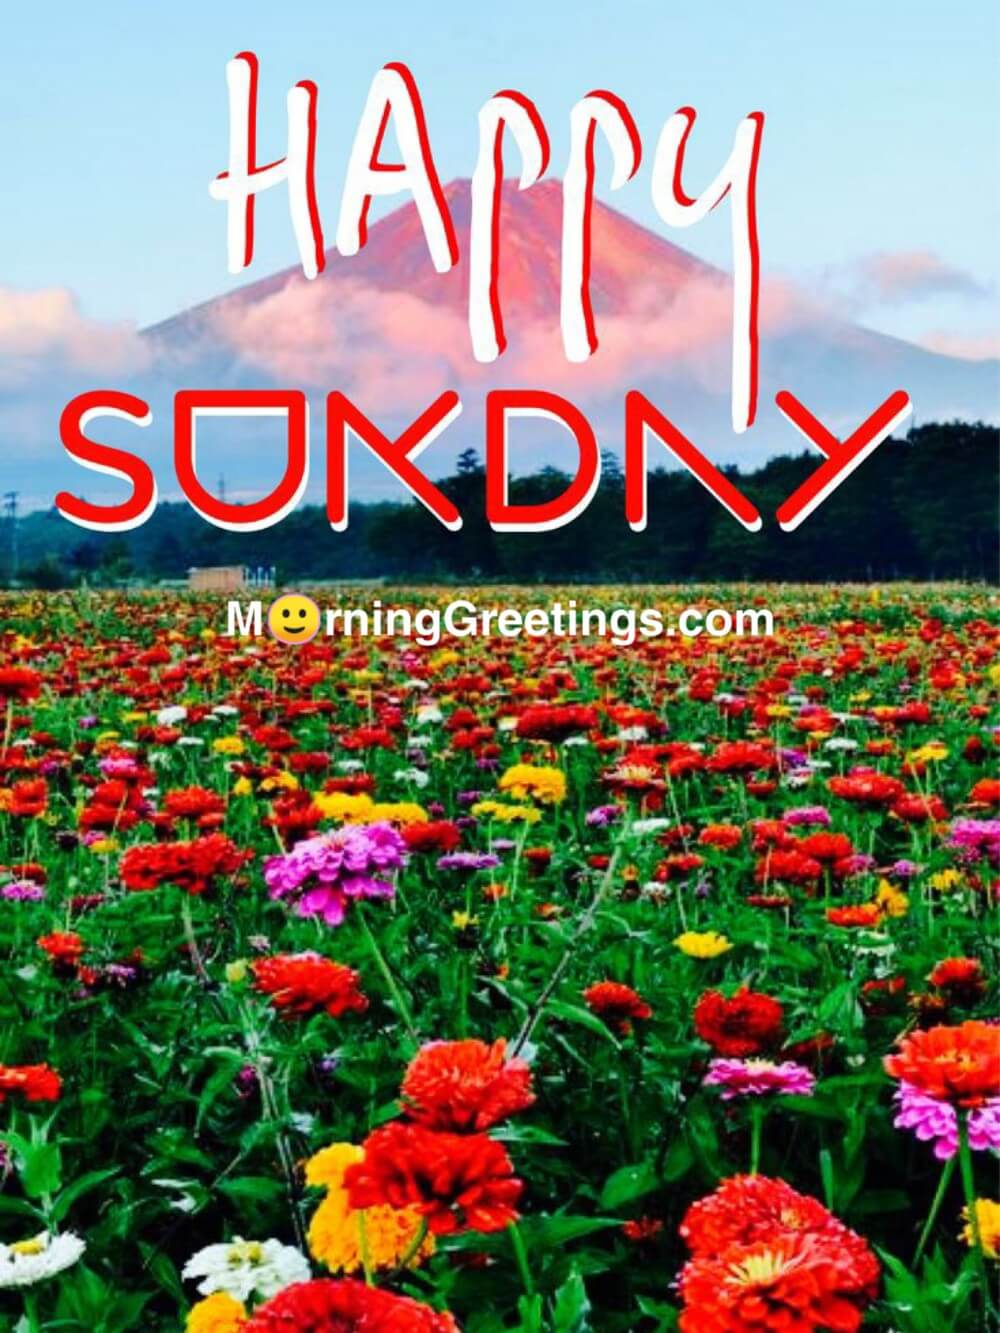 40 Wonderful Happy Sunday Morning Images - Morning Greetings – Morning